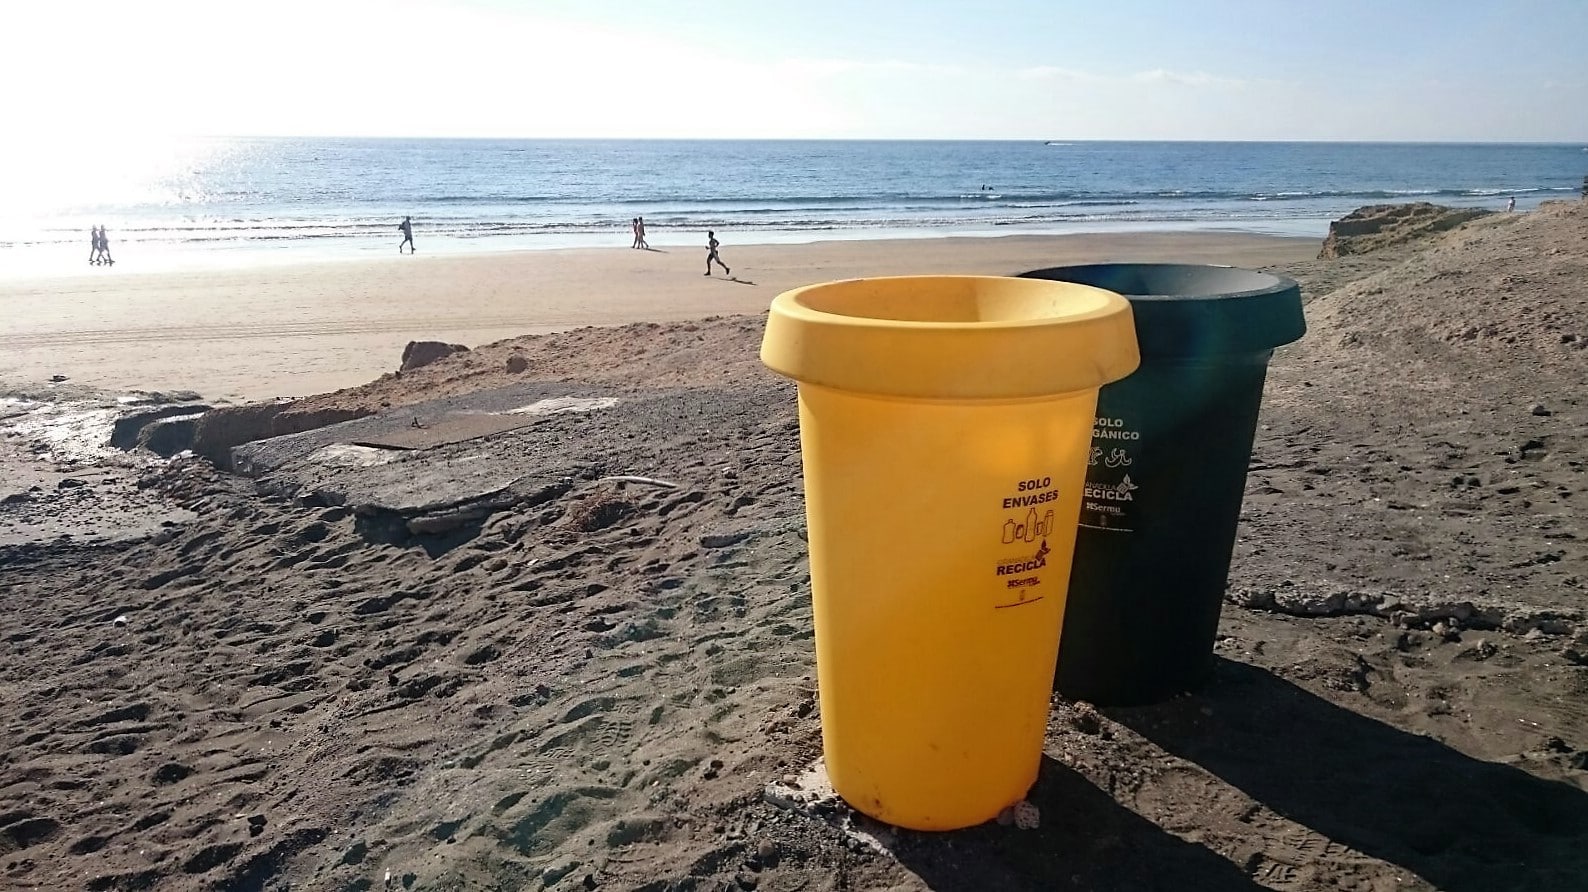 La recogida selectiva de residuos se extiende a las playas del municipio